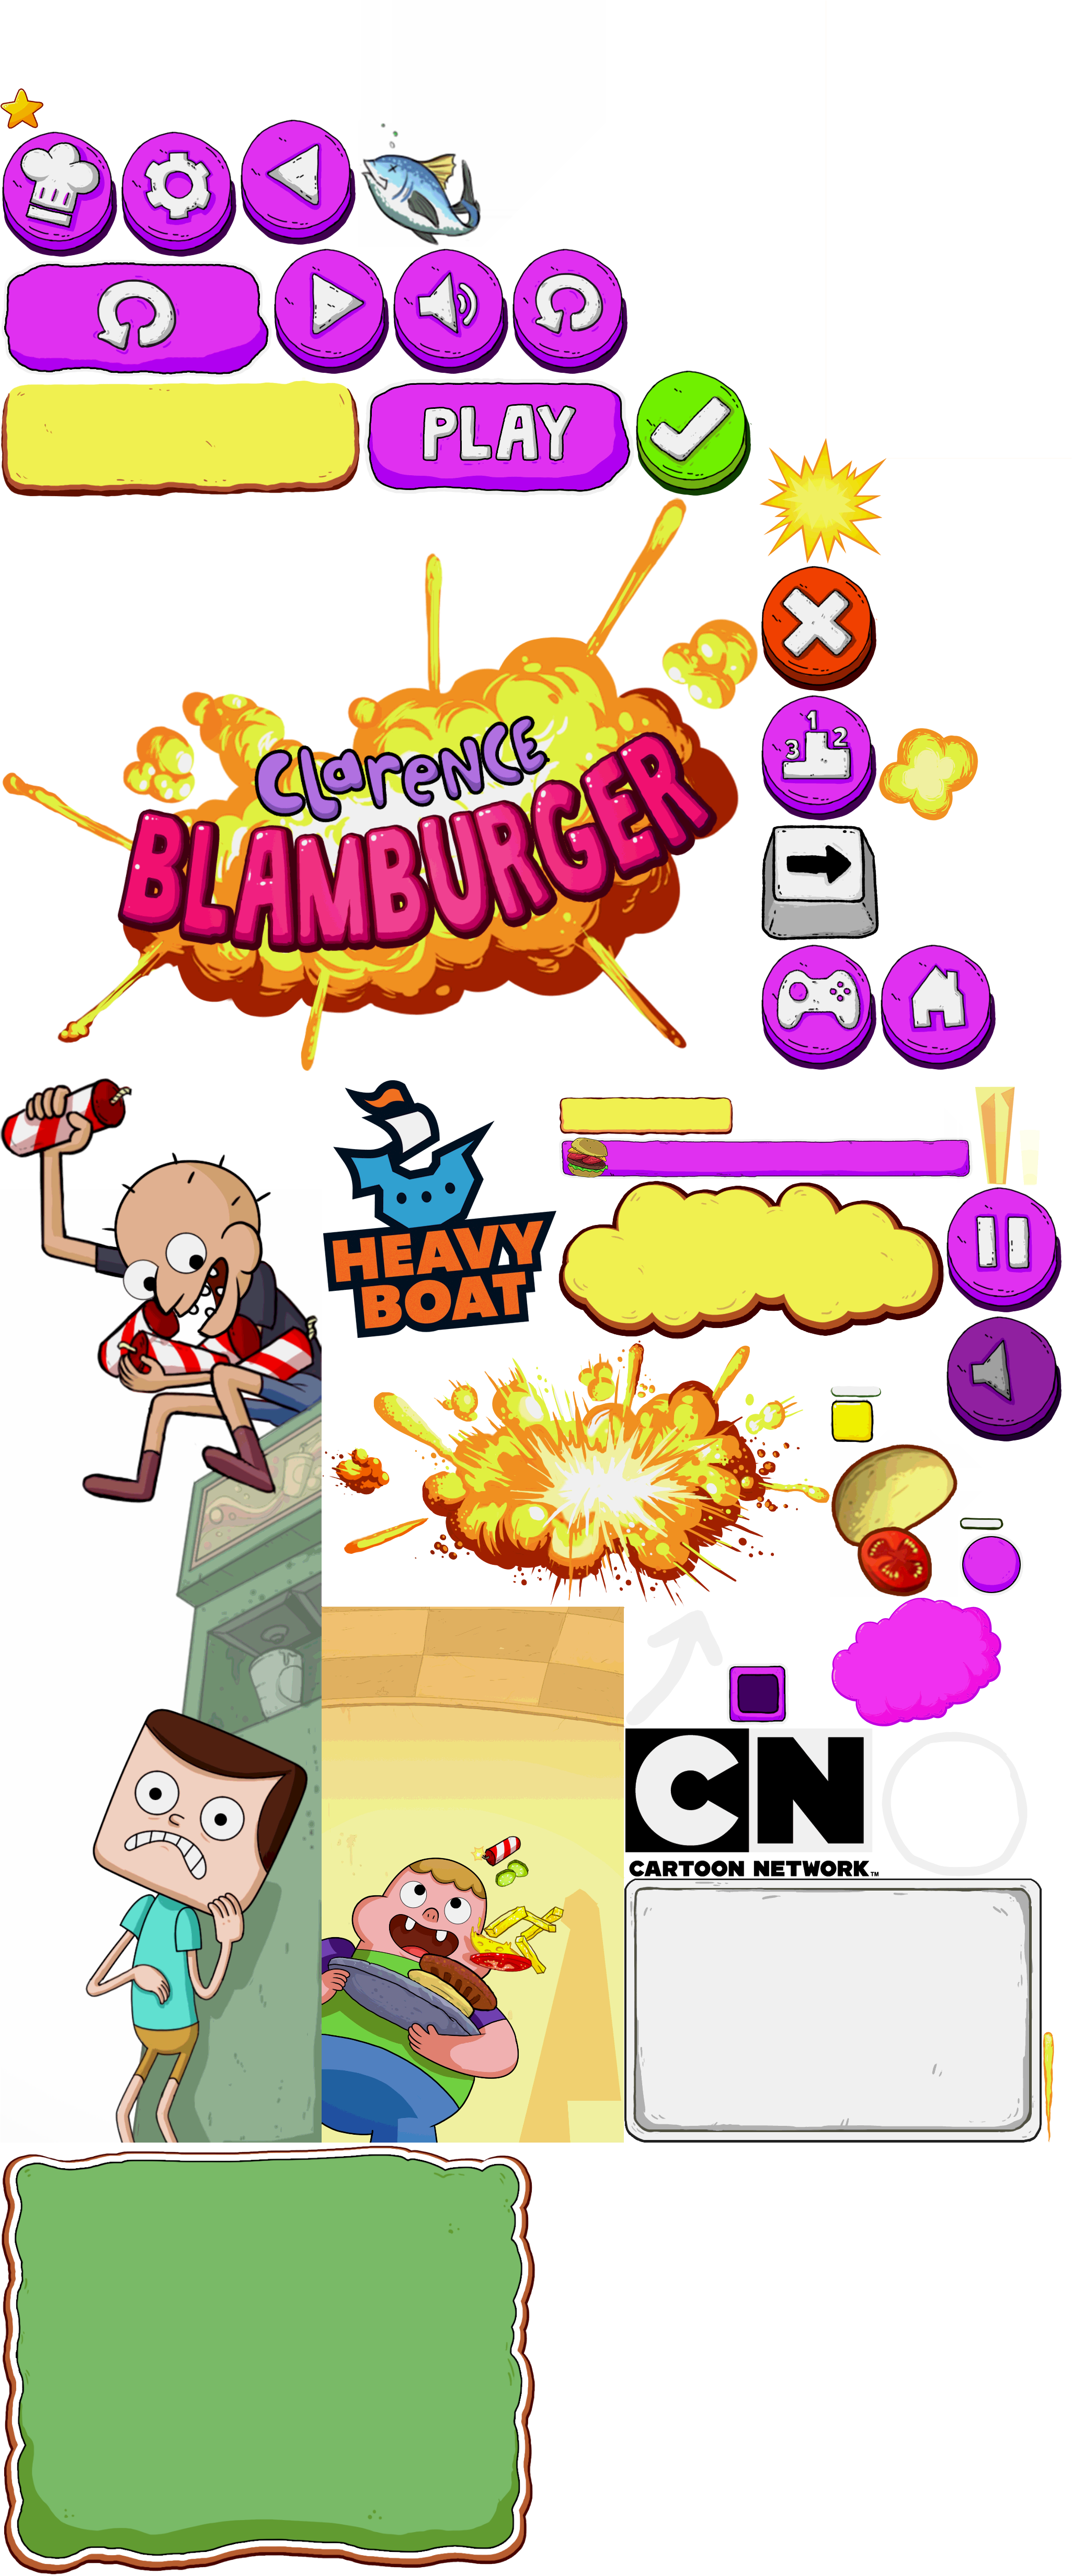 Clarence: Blamburger - GUI